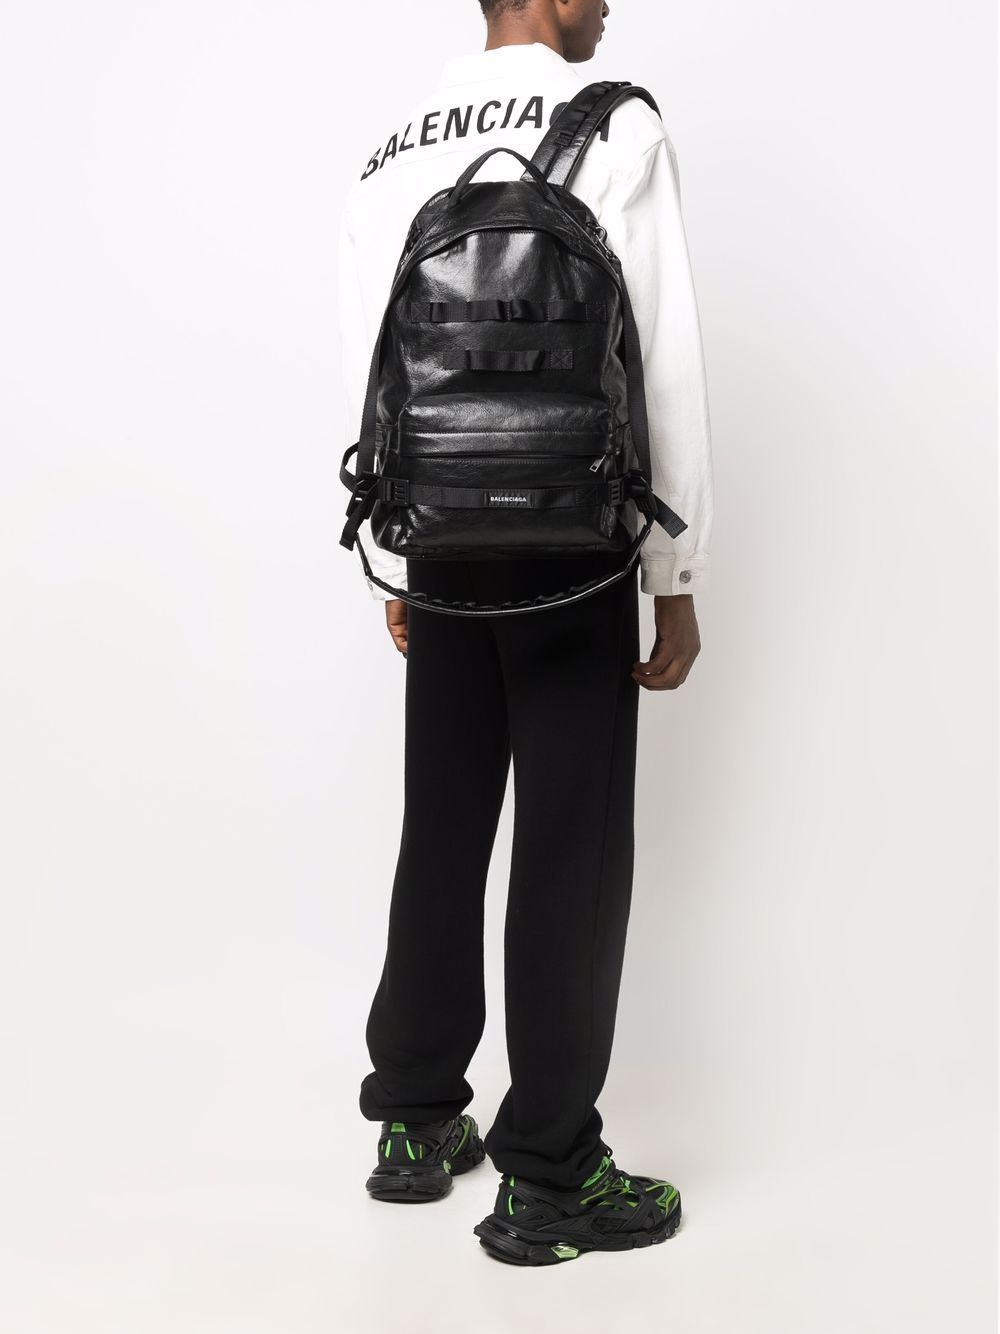 фото Balenciaga рюкзак в стиле милитари